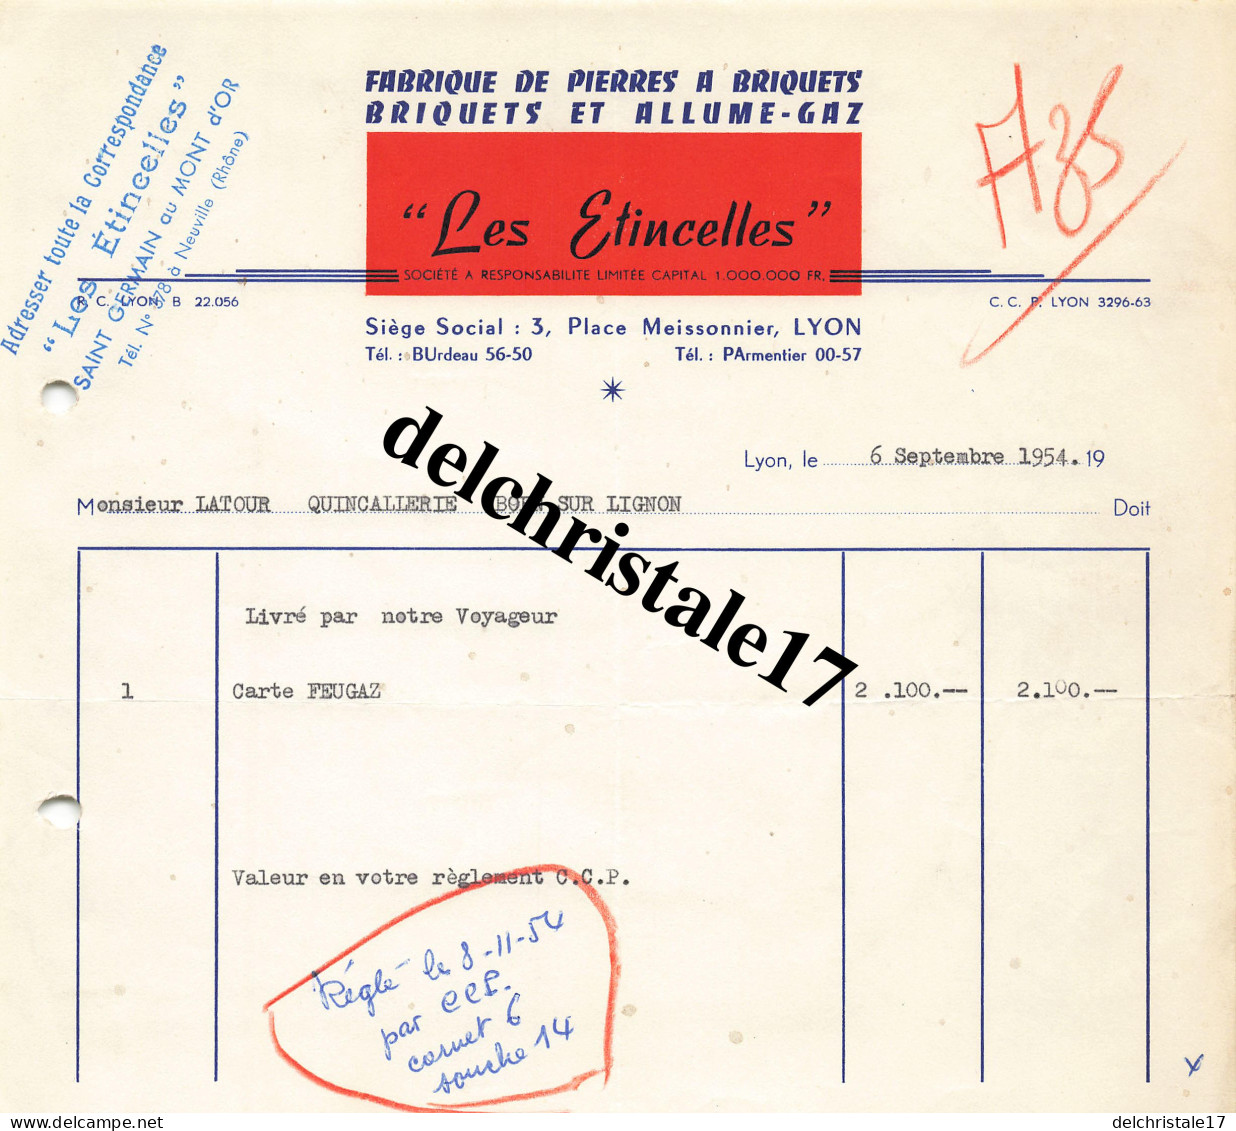 69 0188 LYON RHÔNE 1954 Fabrication De Pierres à Briquets Allume-Gaz "LES ÉTINCELLES" Place Meissonnier à M. LATOUR - Documents